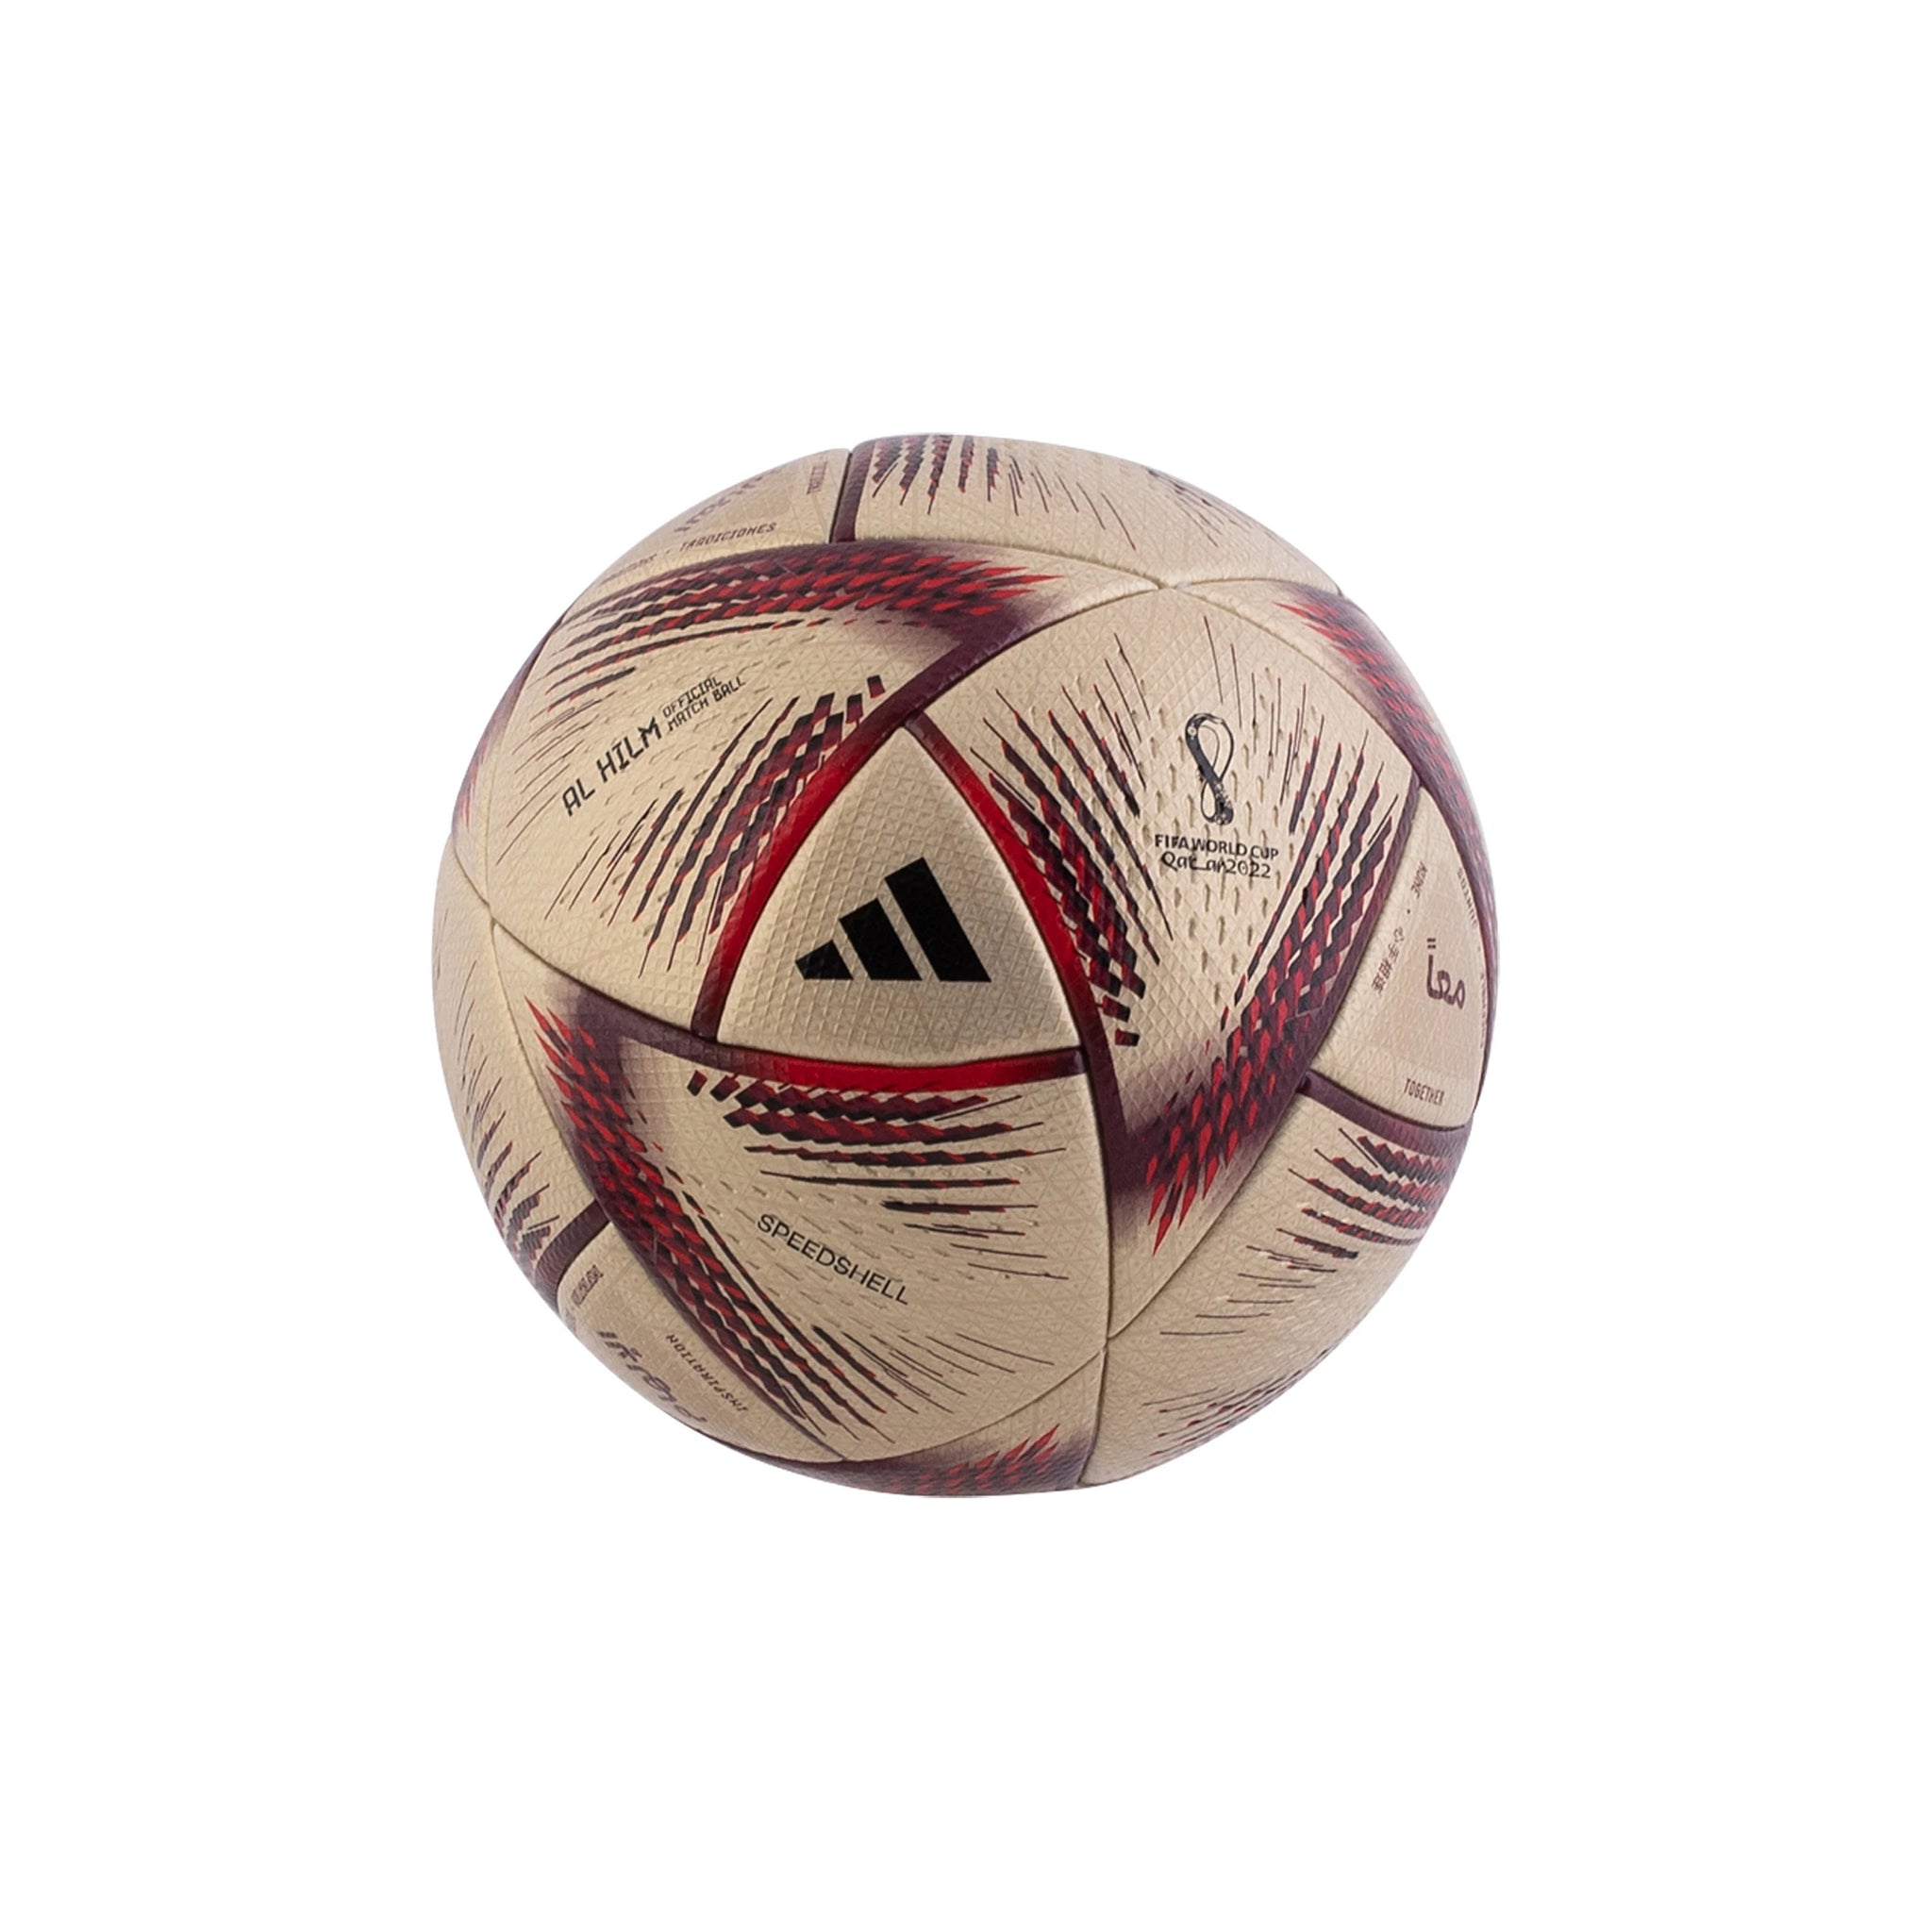 ADIDAS Al Hilm FIFA World Cup Qatar 2022 Finale Official Match Ball